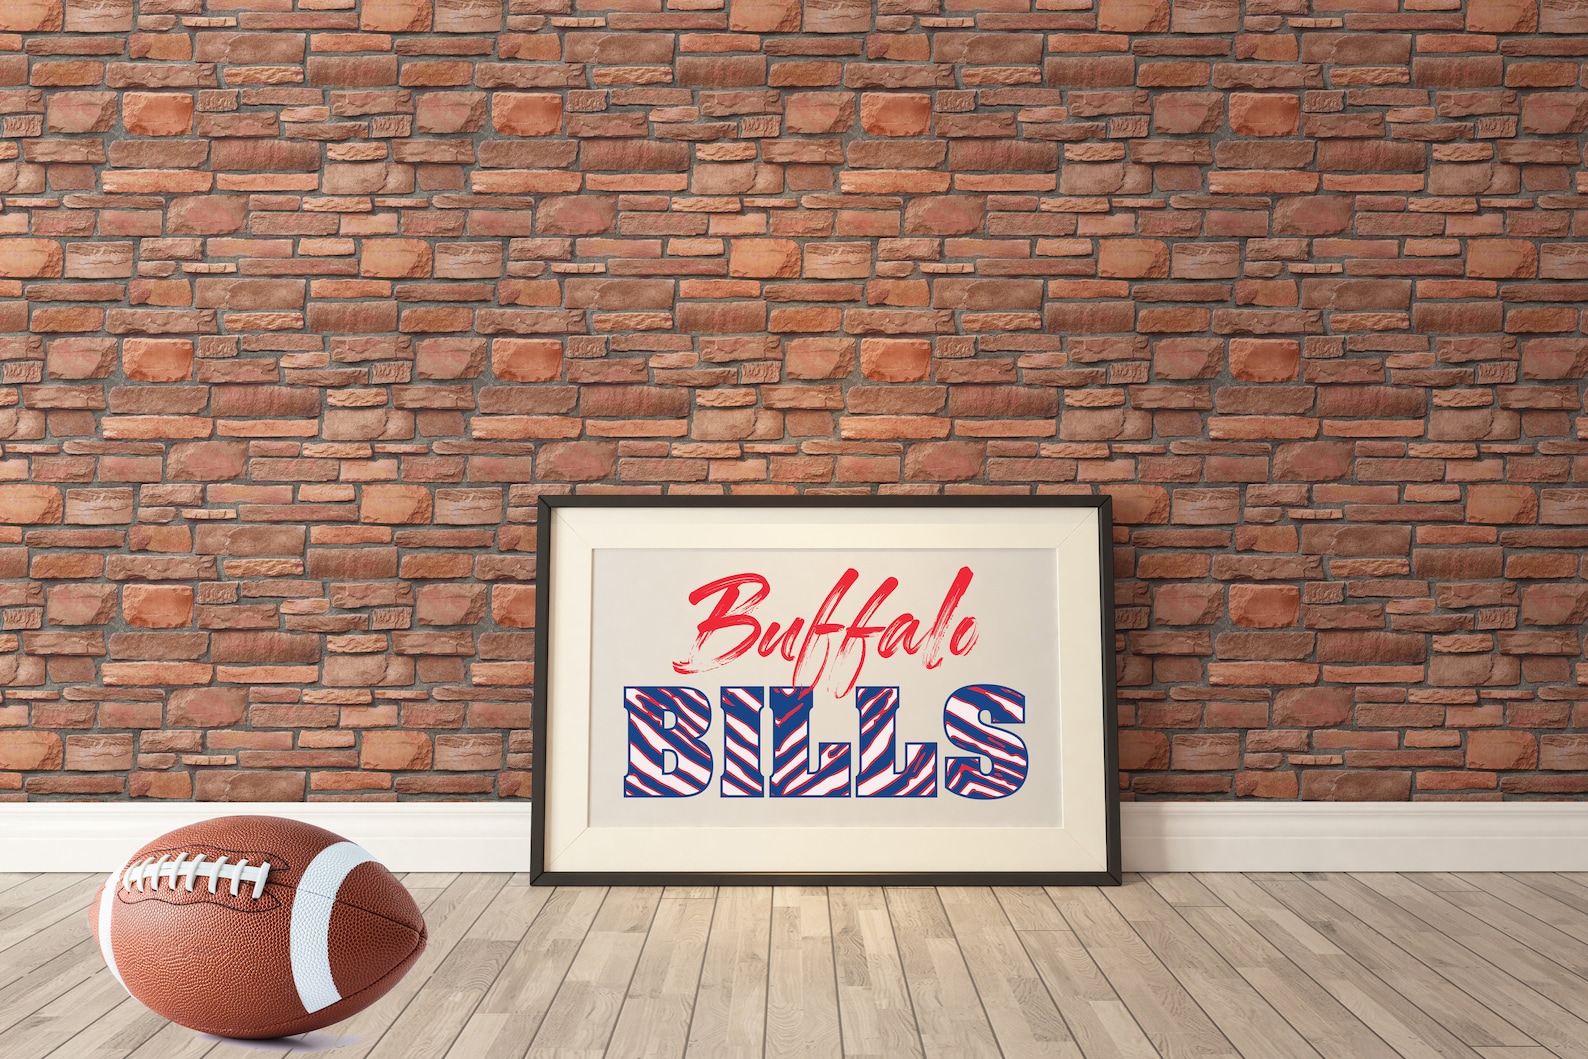 BUFFALO BILLS ZUBAZ pattern wall art / Buffalo Bills / | Etsy